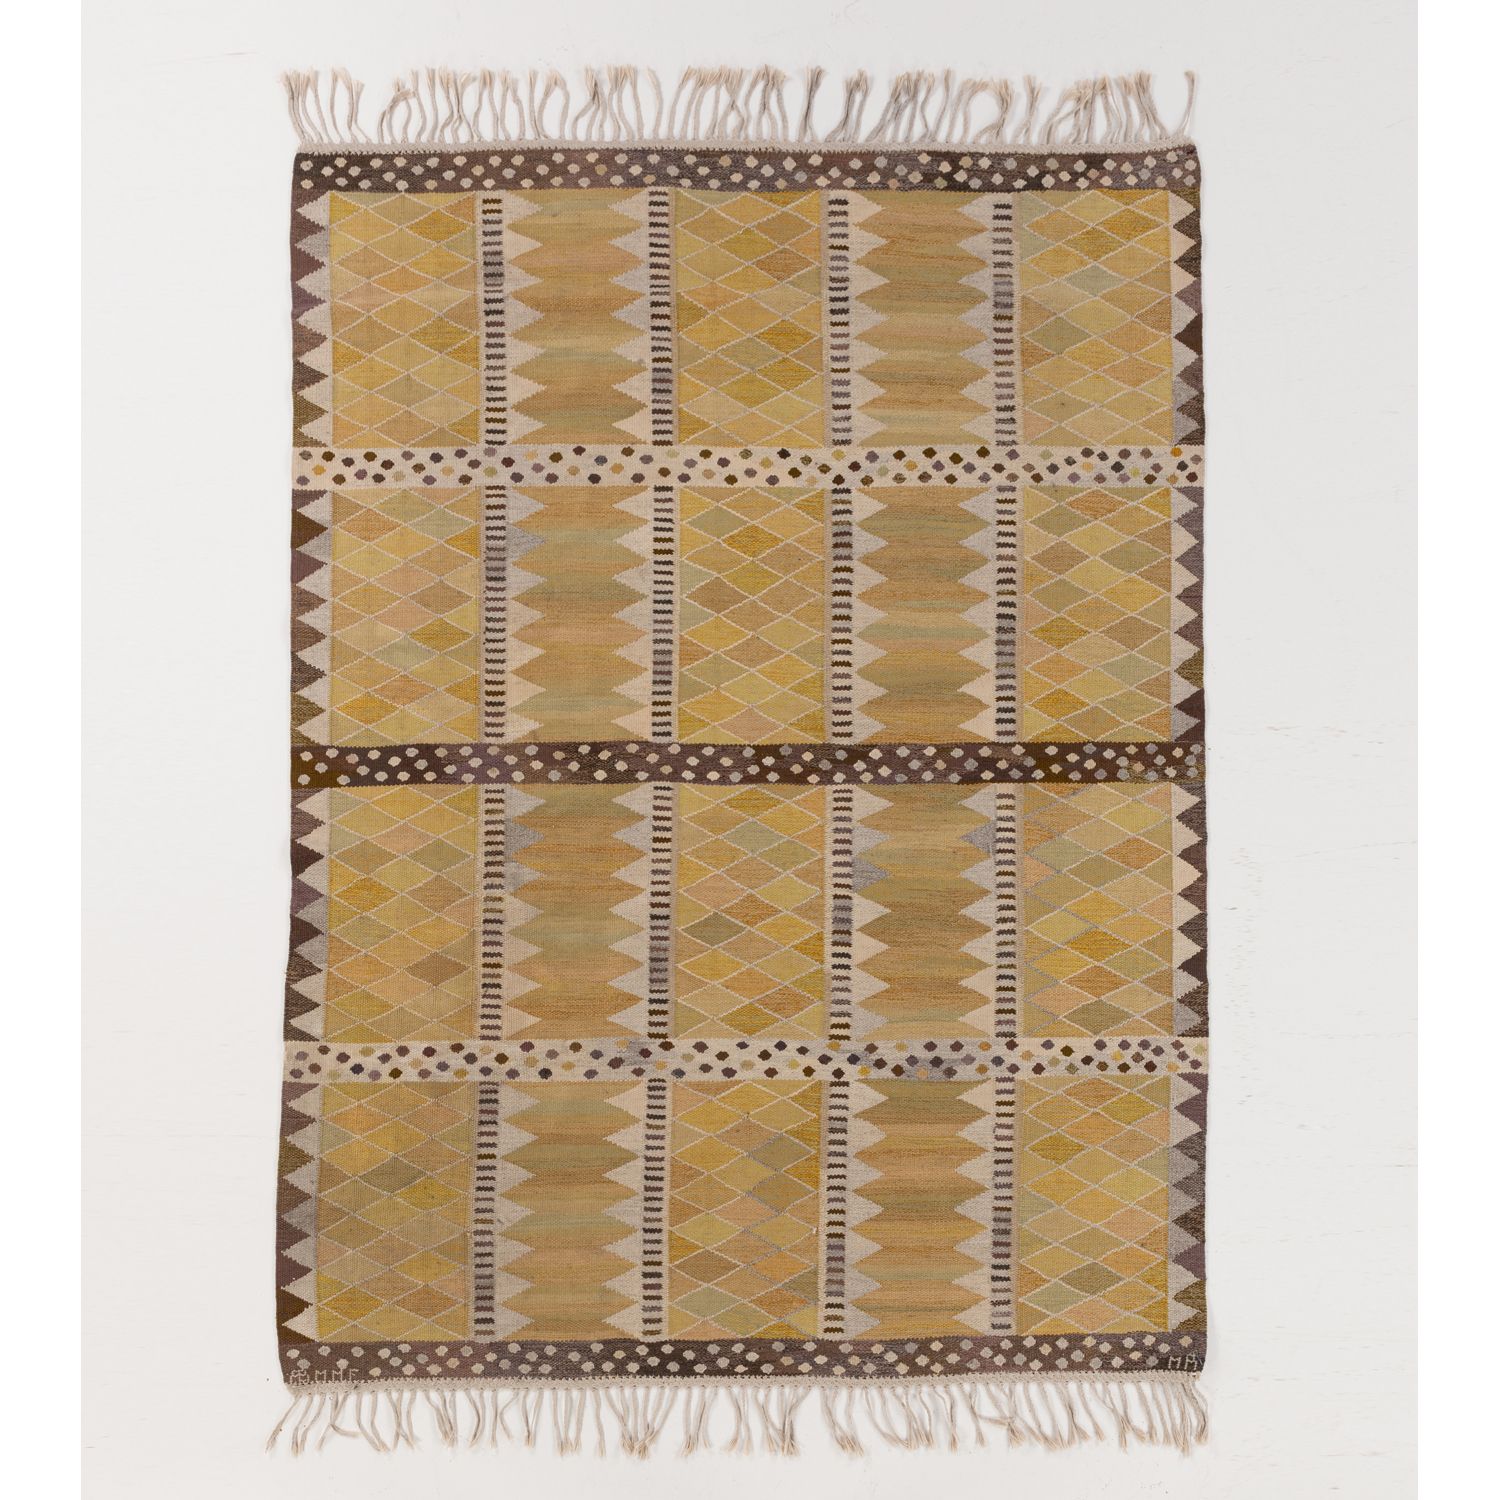 Null ƒ Marianne Richter (1916-2010)

Josefina gul

Carpet

Flat-woven wool

Edit&hellip;